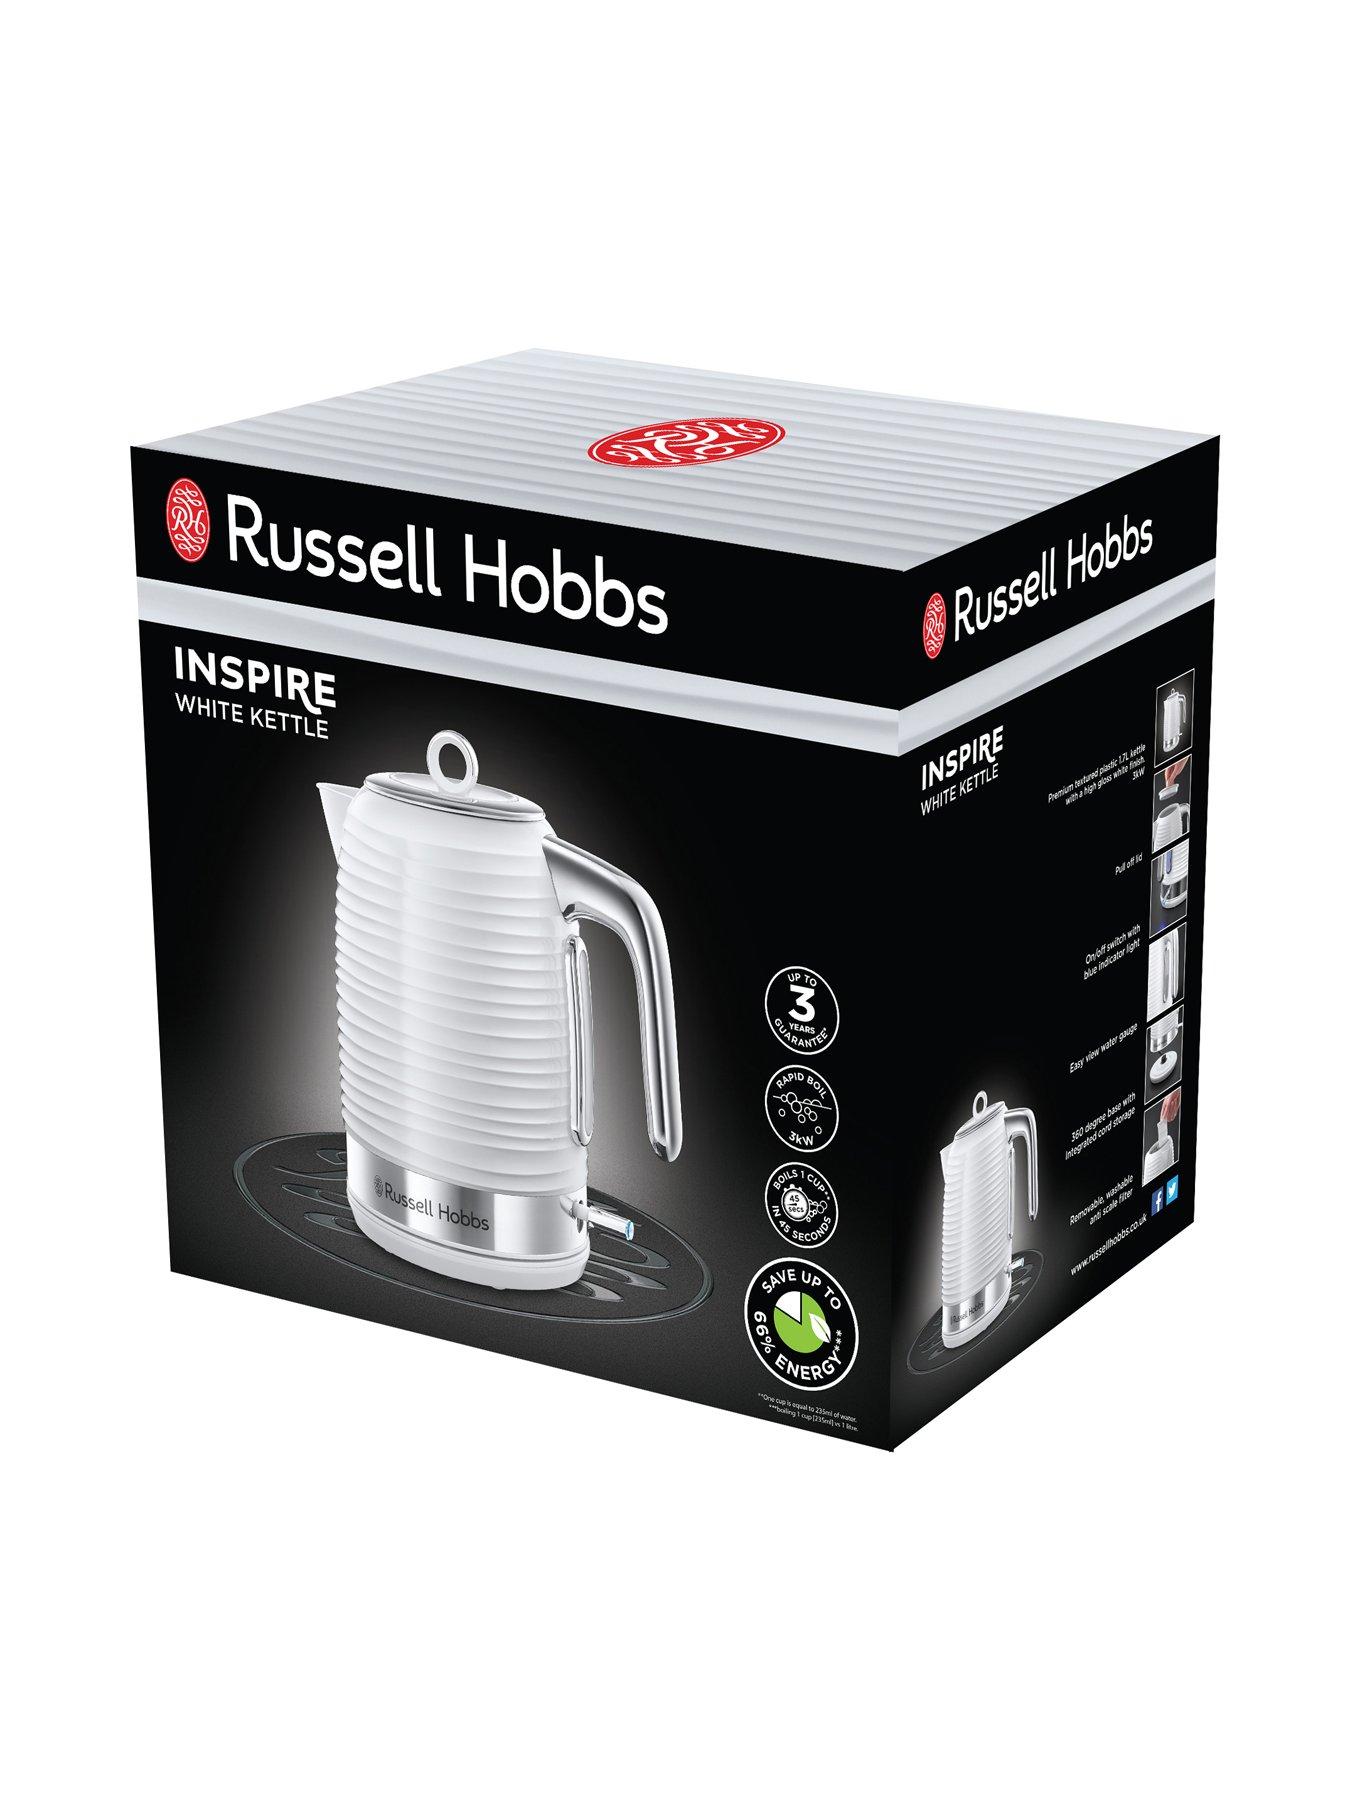 russell hobbs inspire jug kettle